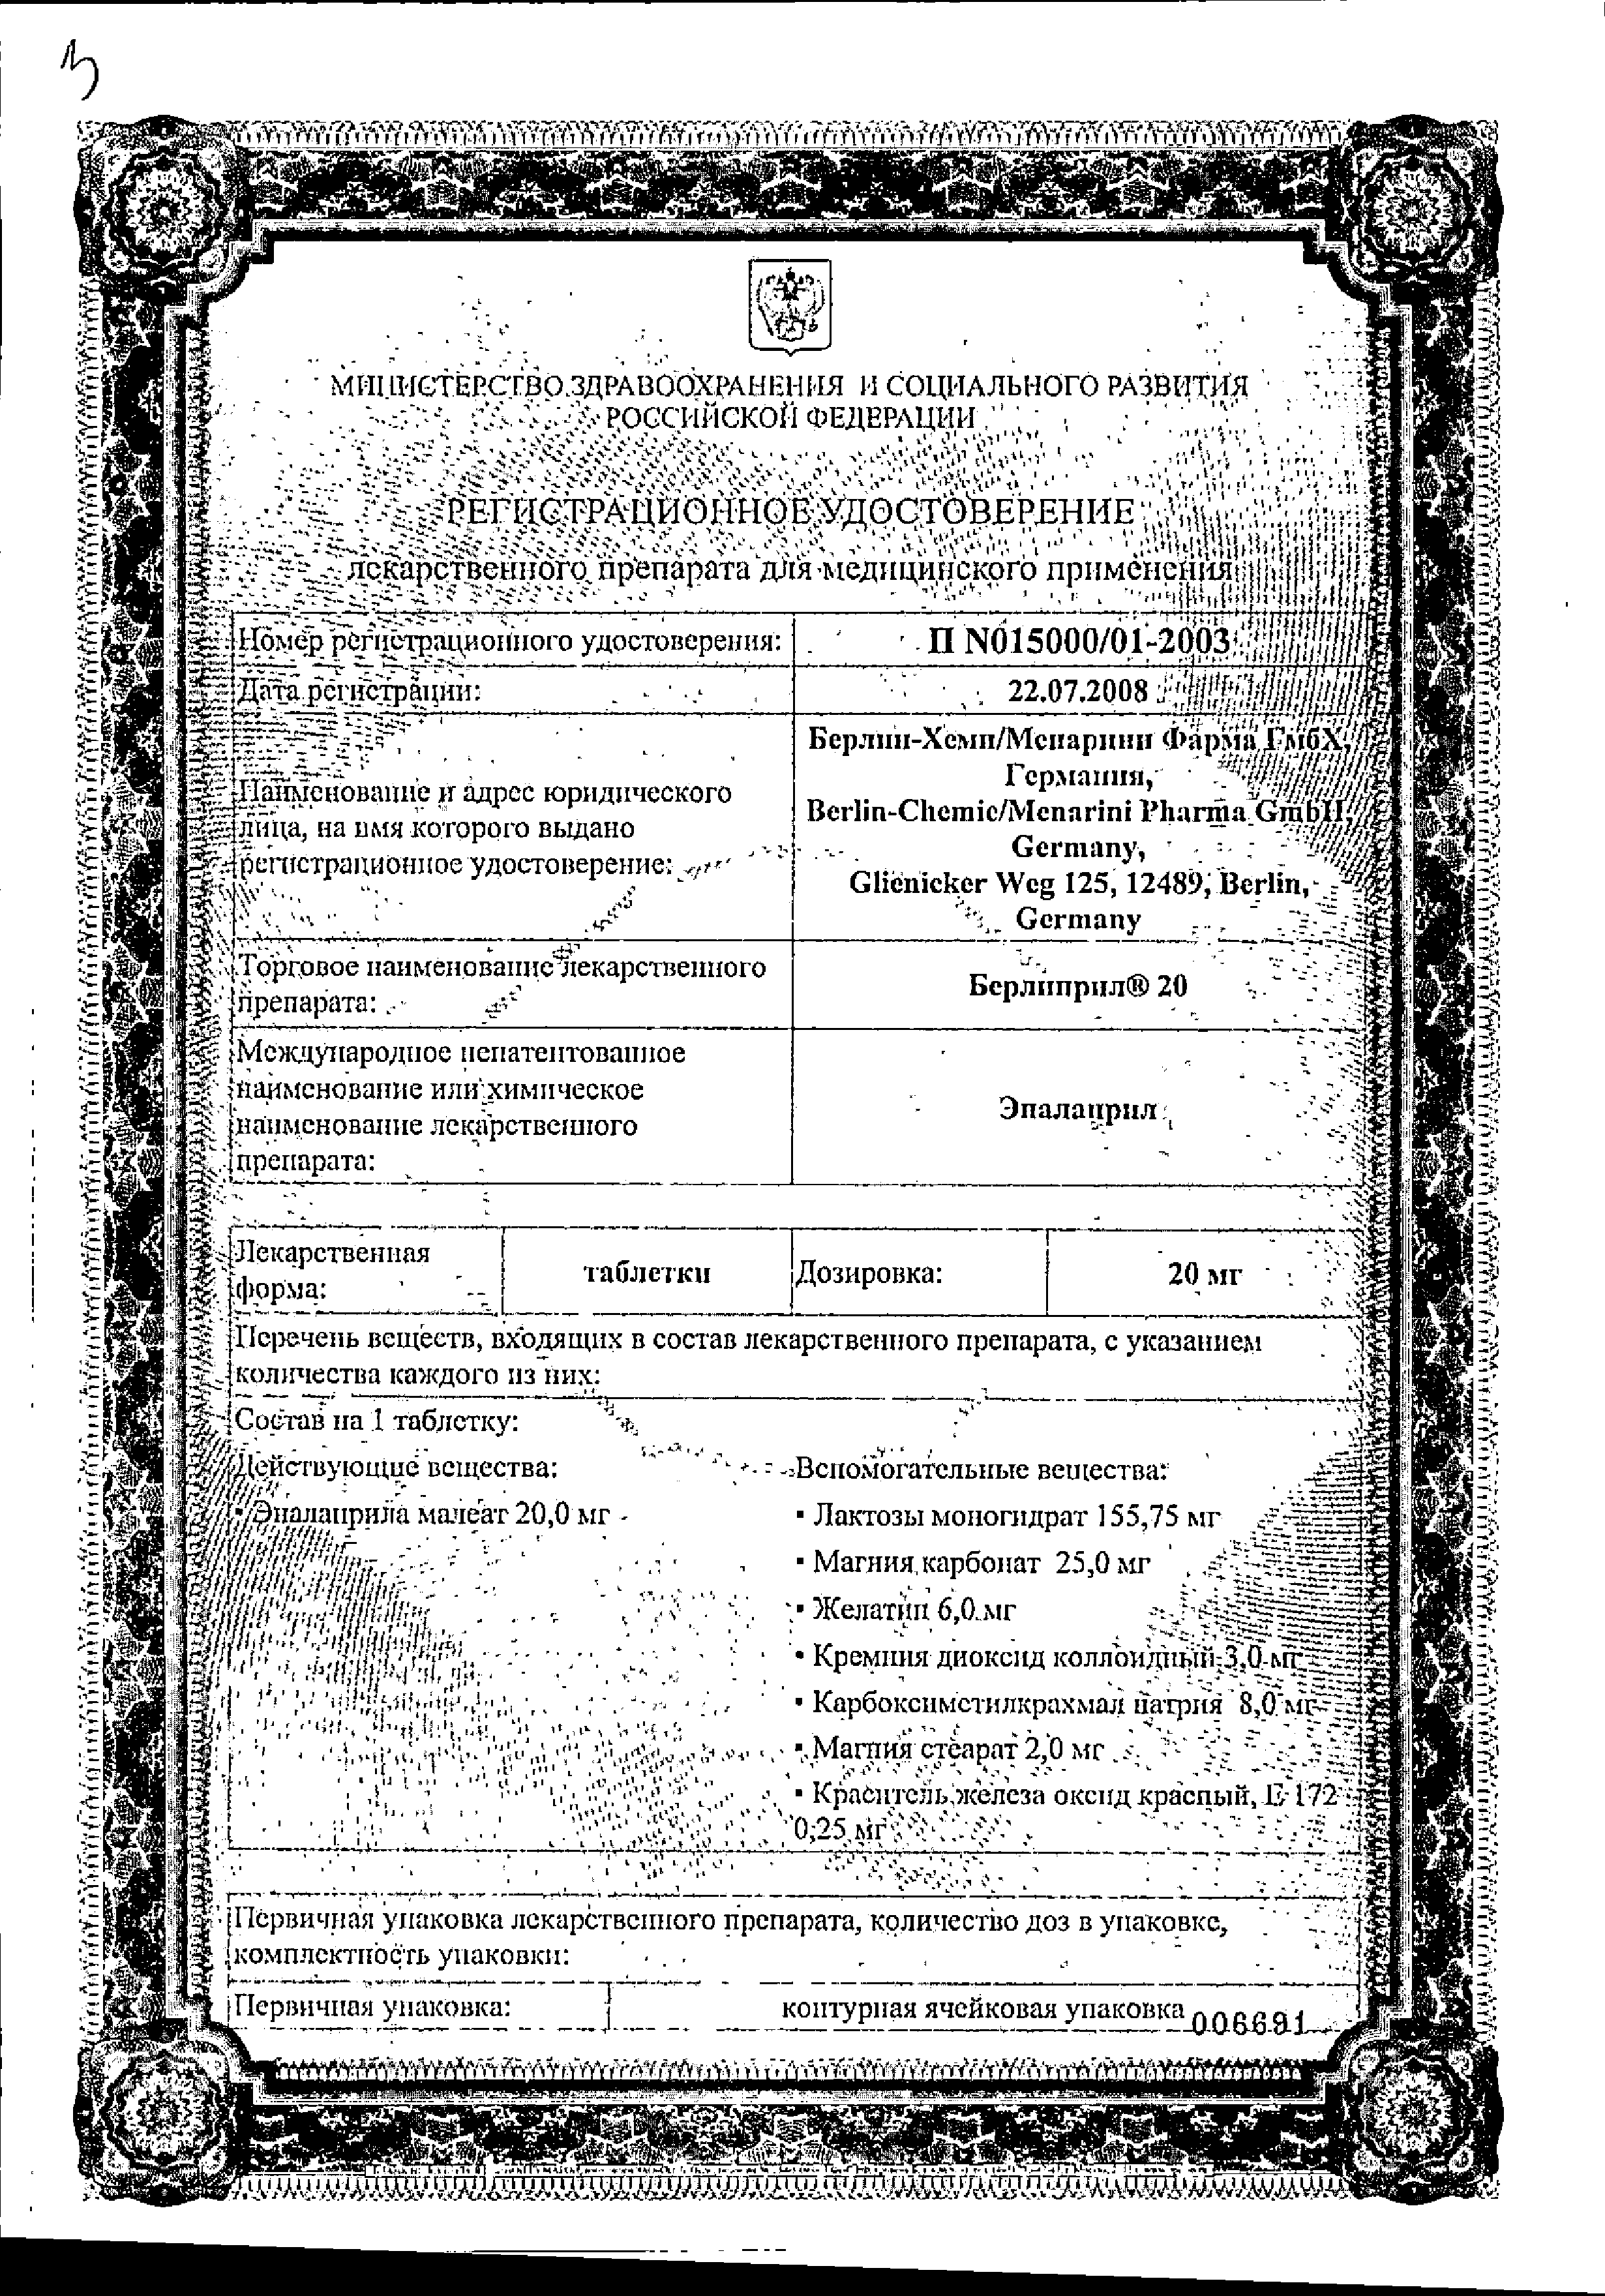 Берлиприл 20 сертификат